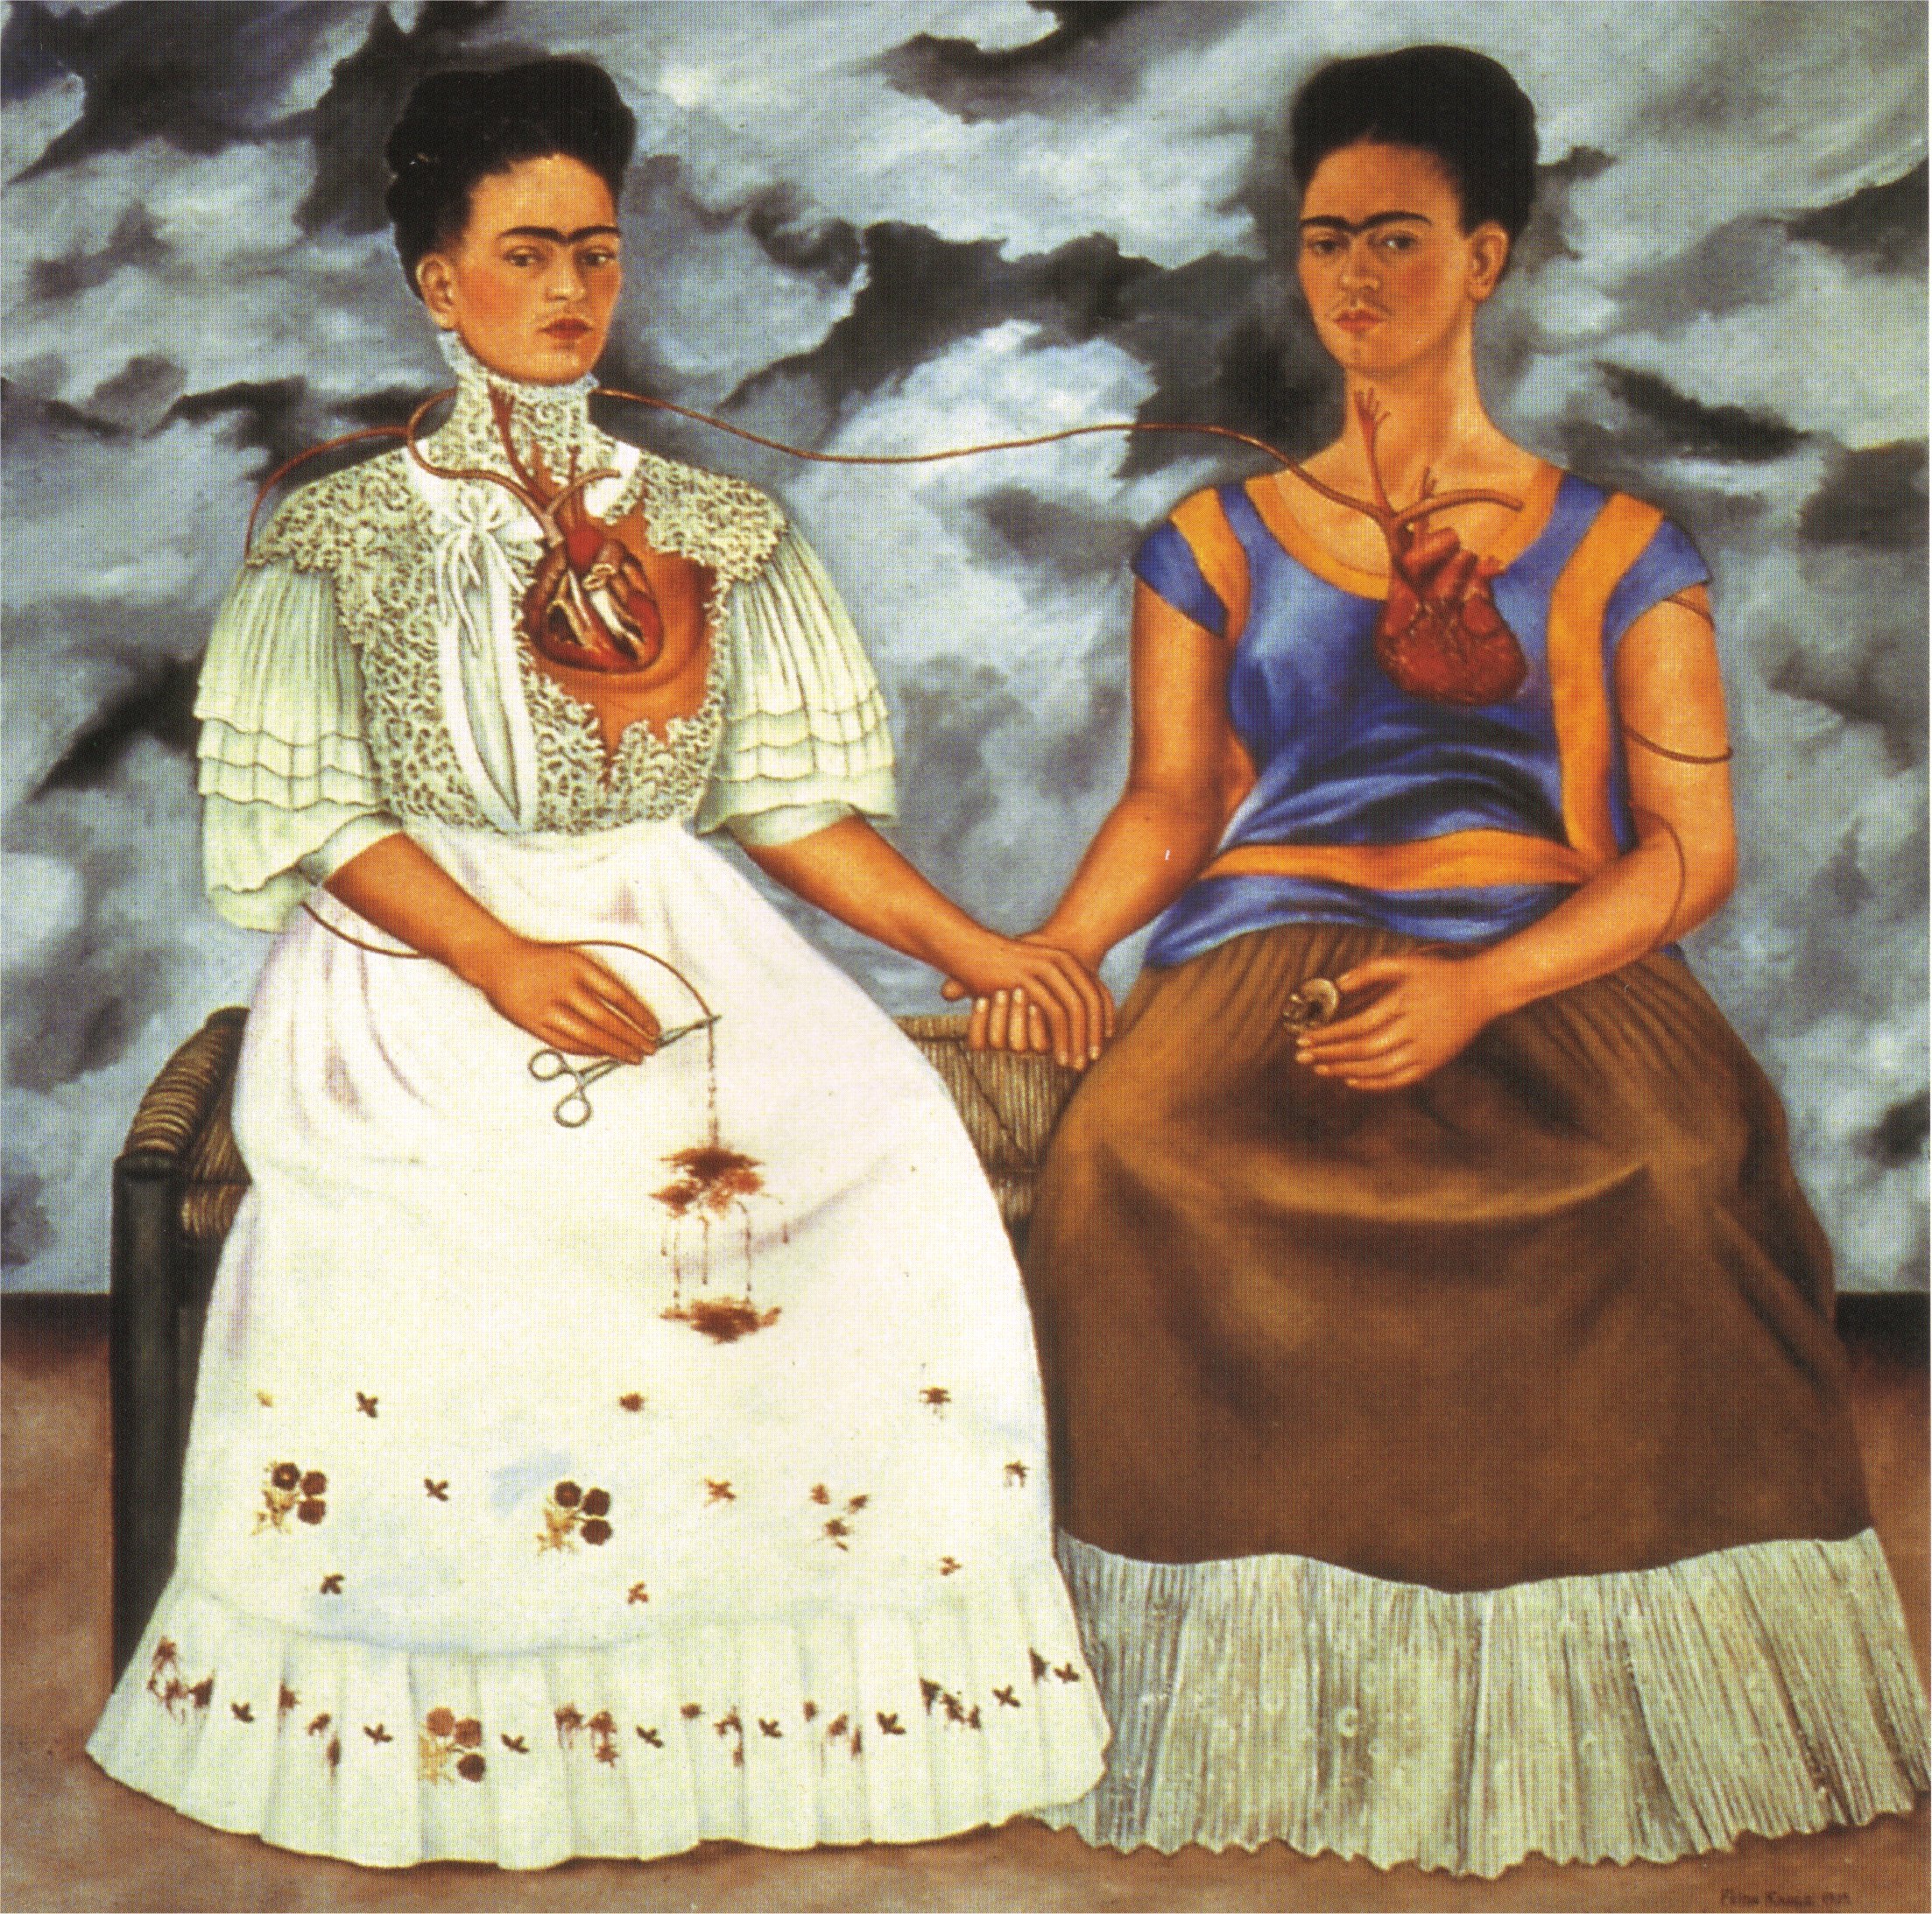 The Two Fridas by Frida Kahlo - 1939 - 173.5 x 173 cm Museo de Arte Moderno de México